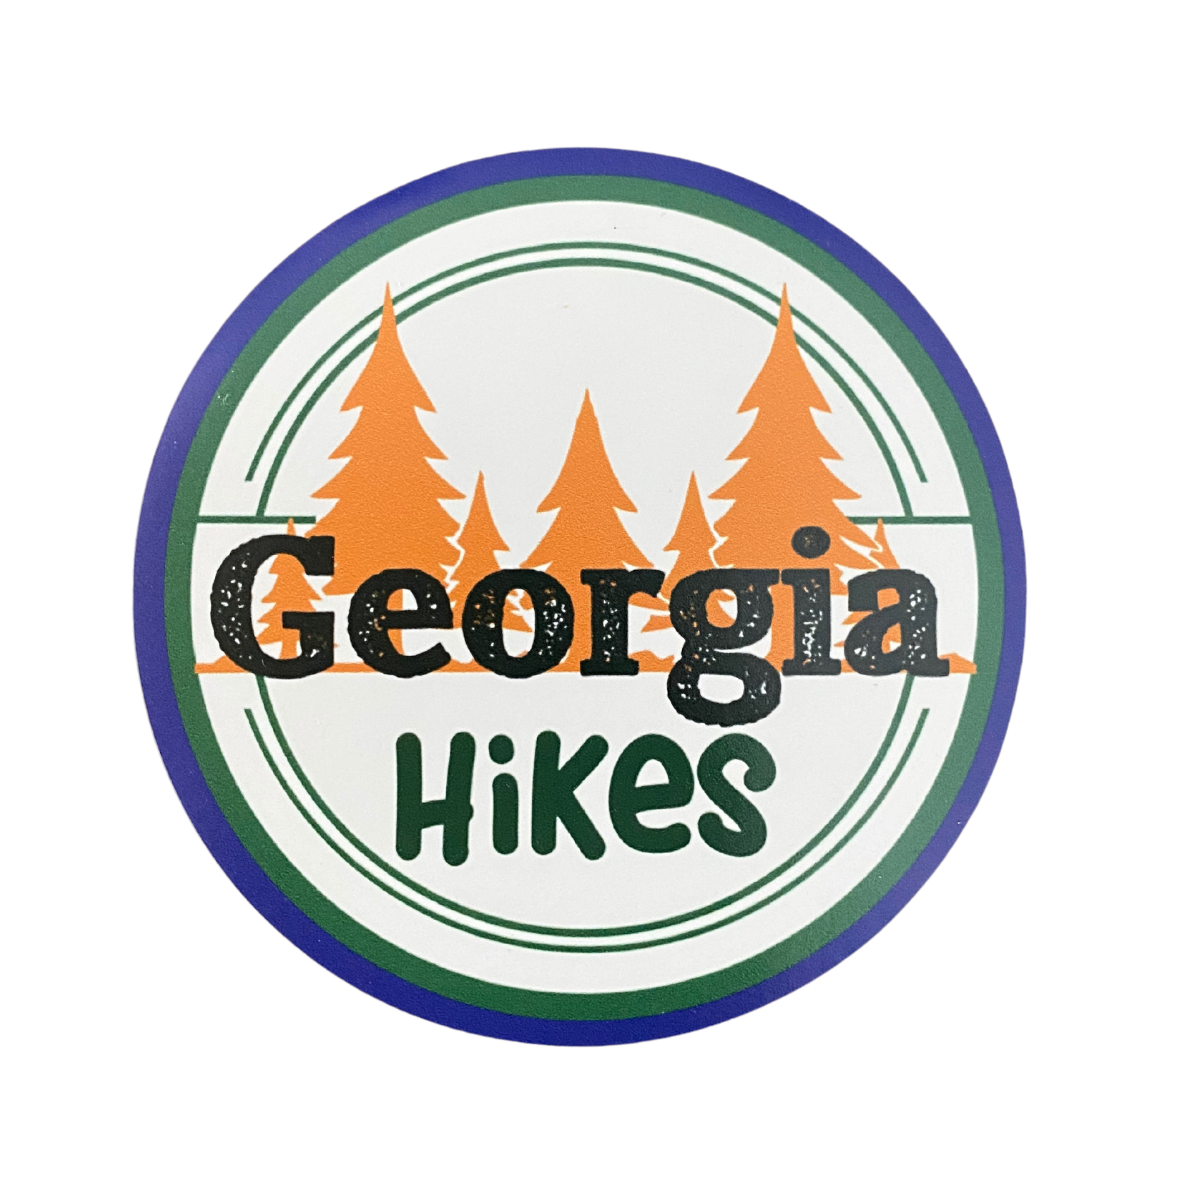 Georgia Hikes Magnet